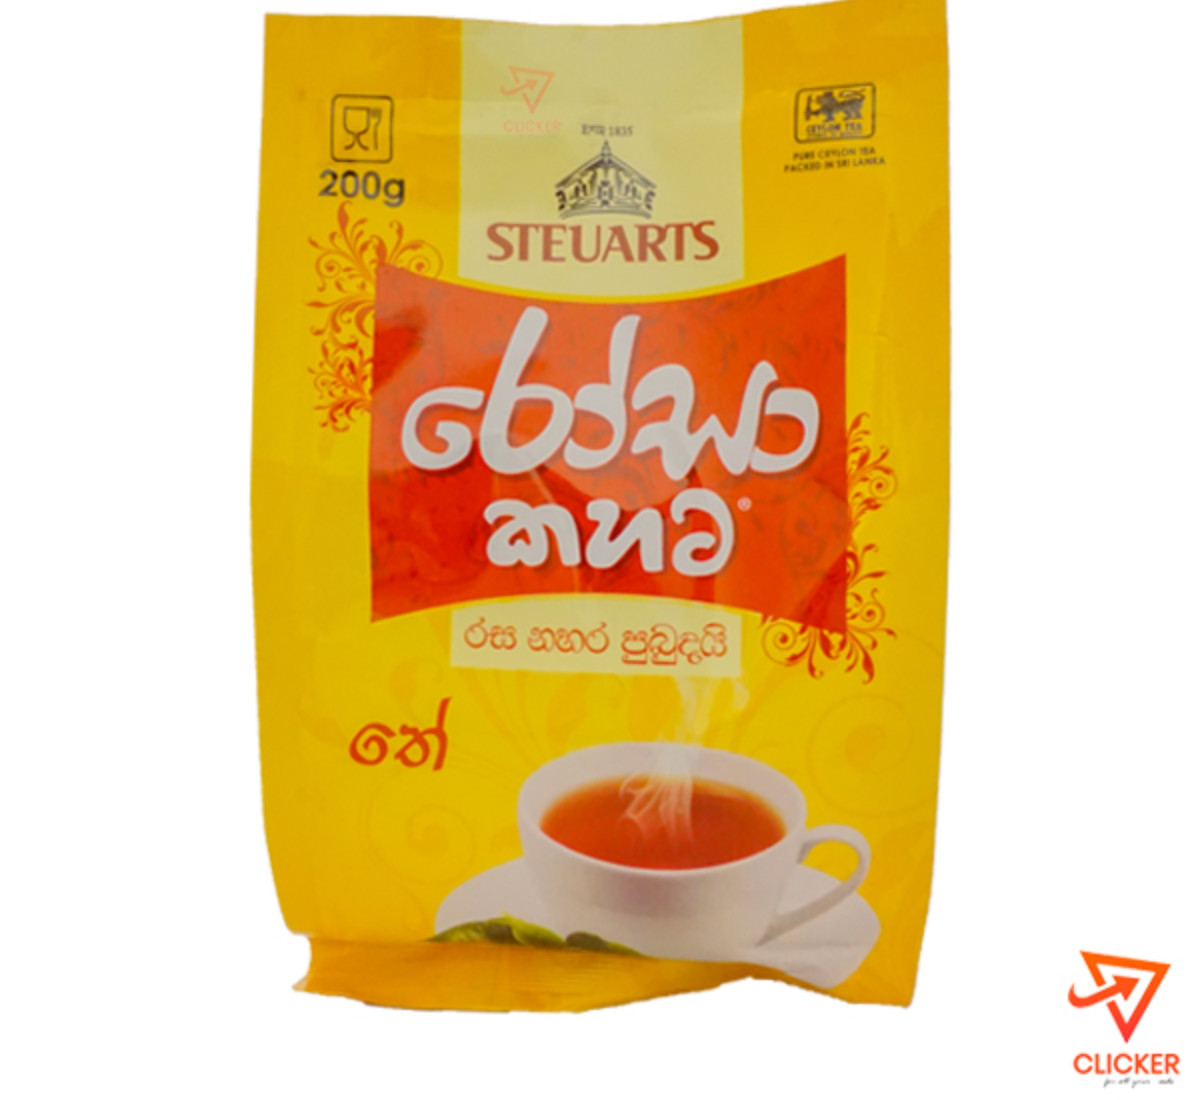 Clicker product 200g STEUARTS Rosa Tea 954